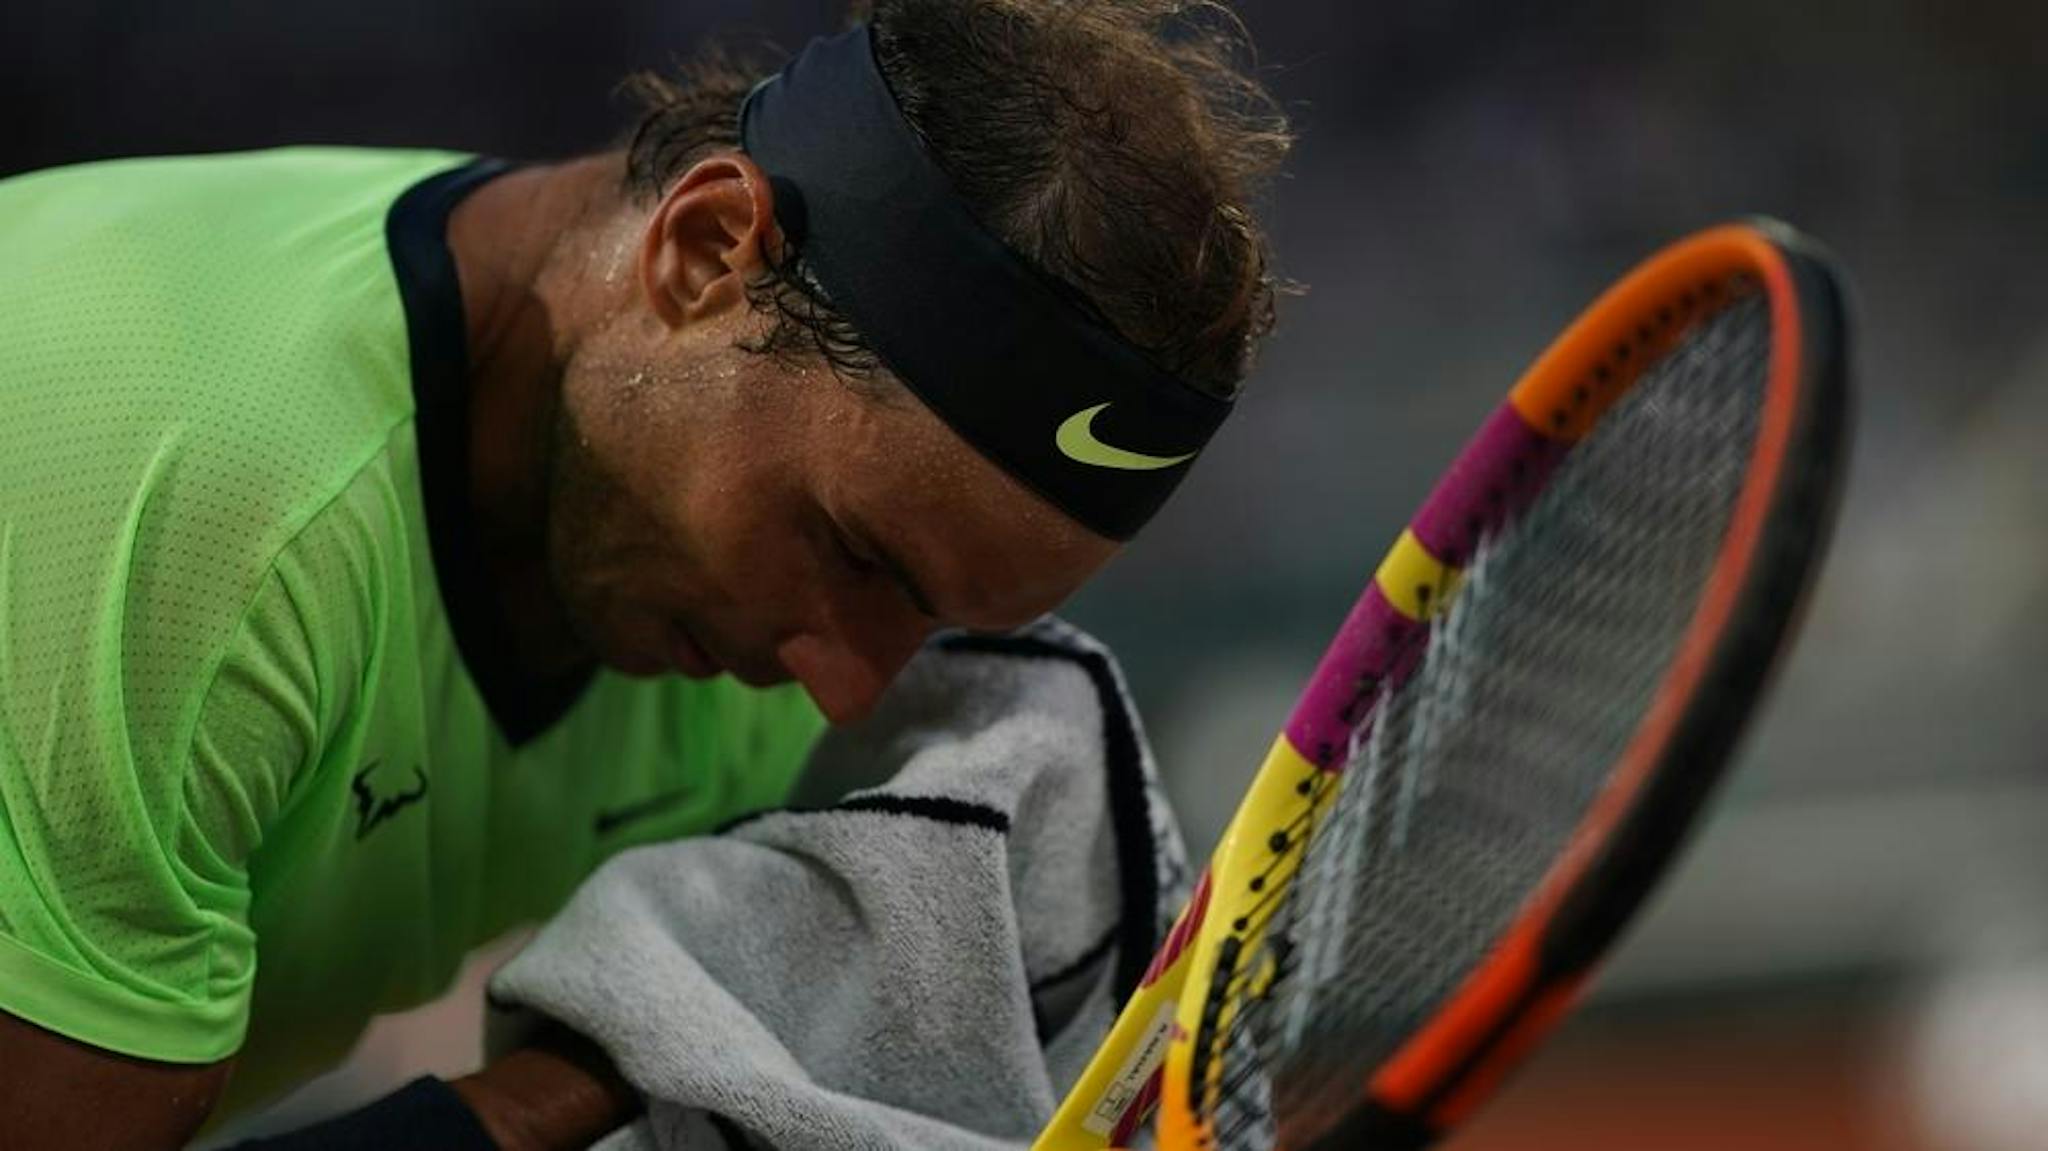 Avant un jeu décisif, faites comme Nadal : concentrez-vous et acceptez la montée de stress.